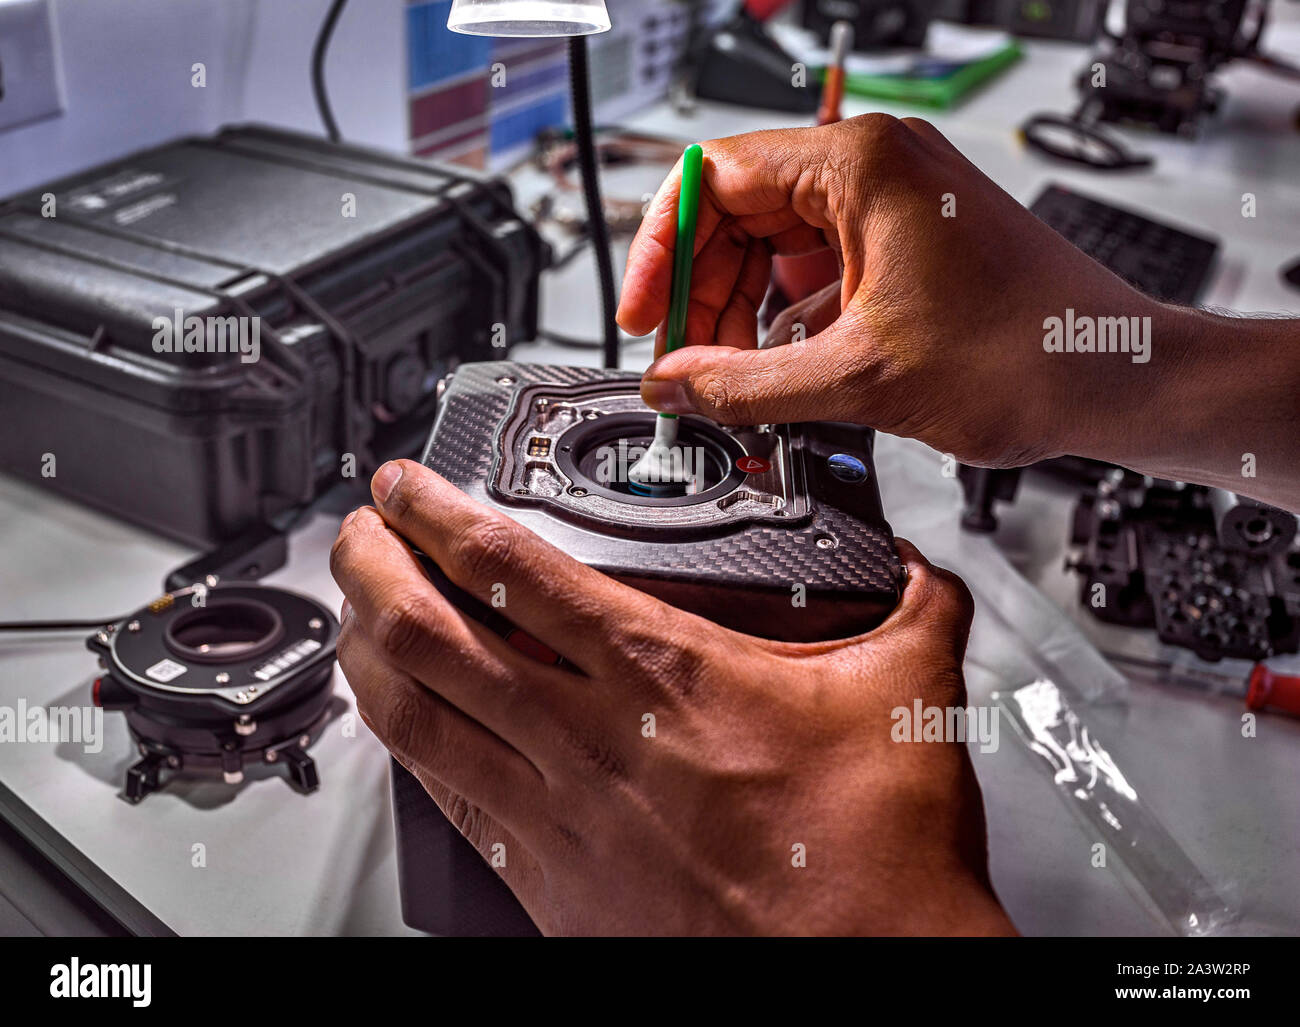 Ein Techniker reinigt den Sensor einer modernen digitalen Filmkamera. Die Art, die Sie verwenden, wäre eine große Hollywood Style Feature Film zu drehen Stockfoto